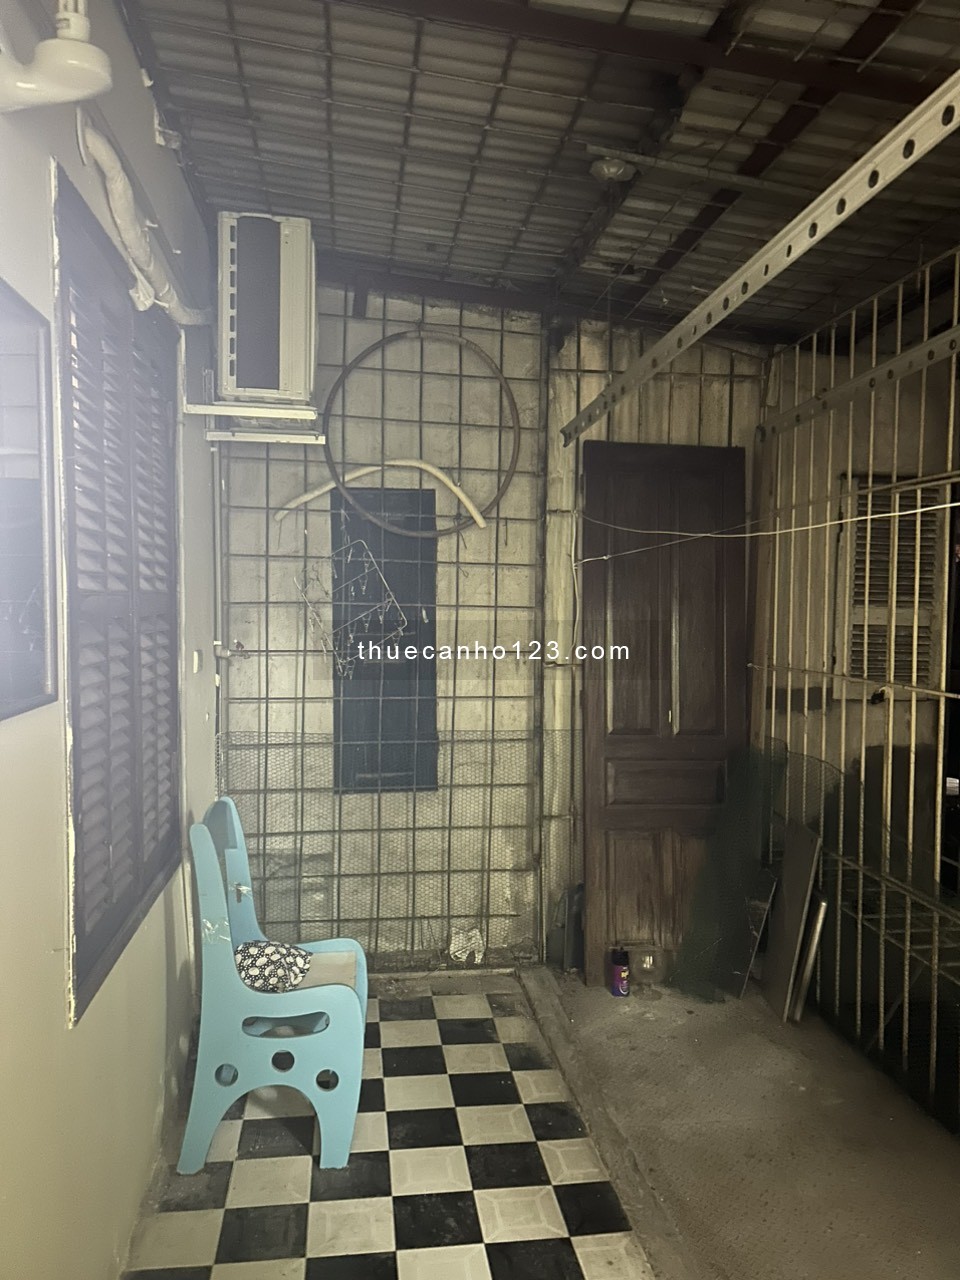 Chính chủ cần cho thuê căn hộ 305 (tầng 3) Nhà D2C tập thể Phương Mai, đường Lương Định Của, Đống Đa